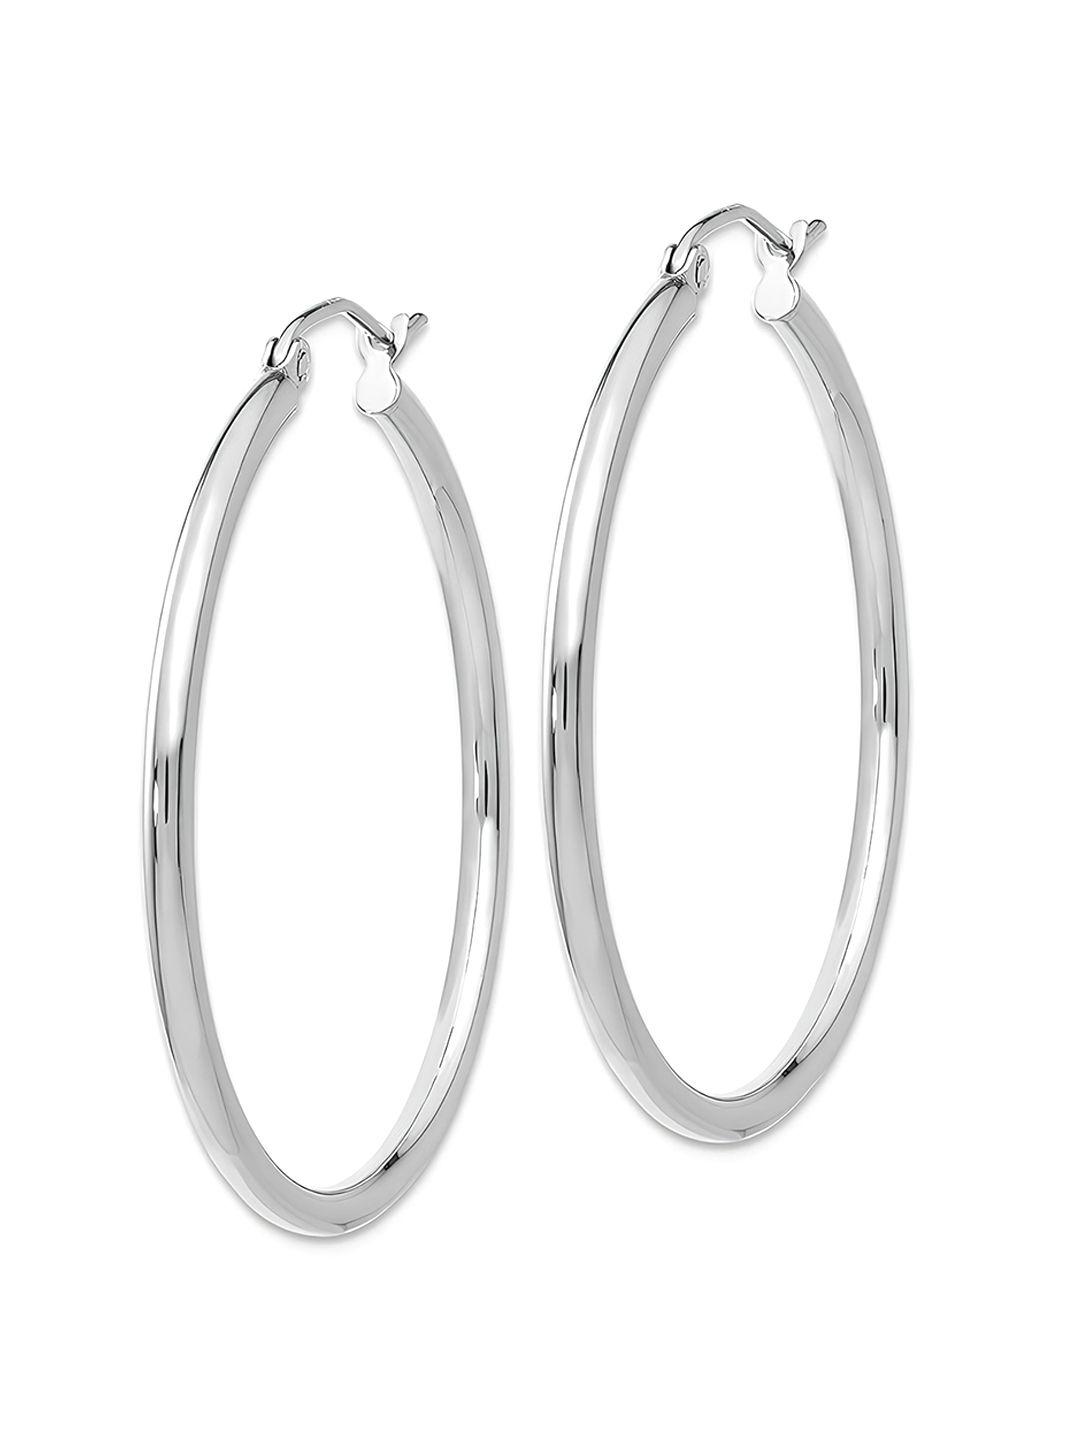 karishma kreations stainless steel contemporary hoop earrings